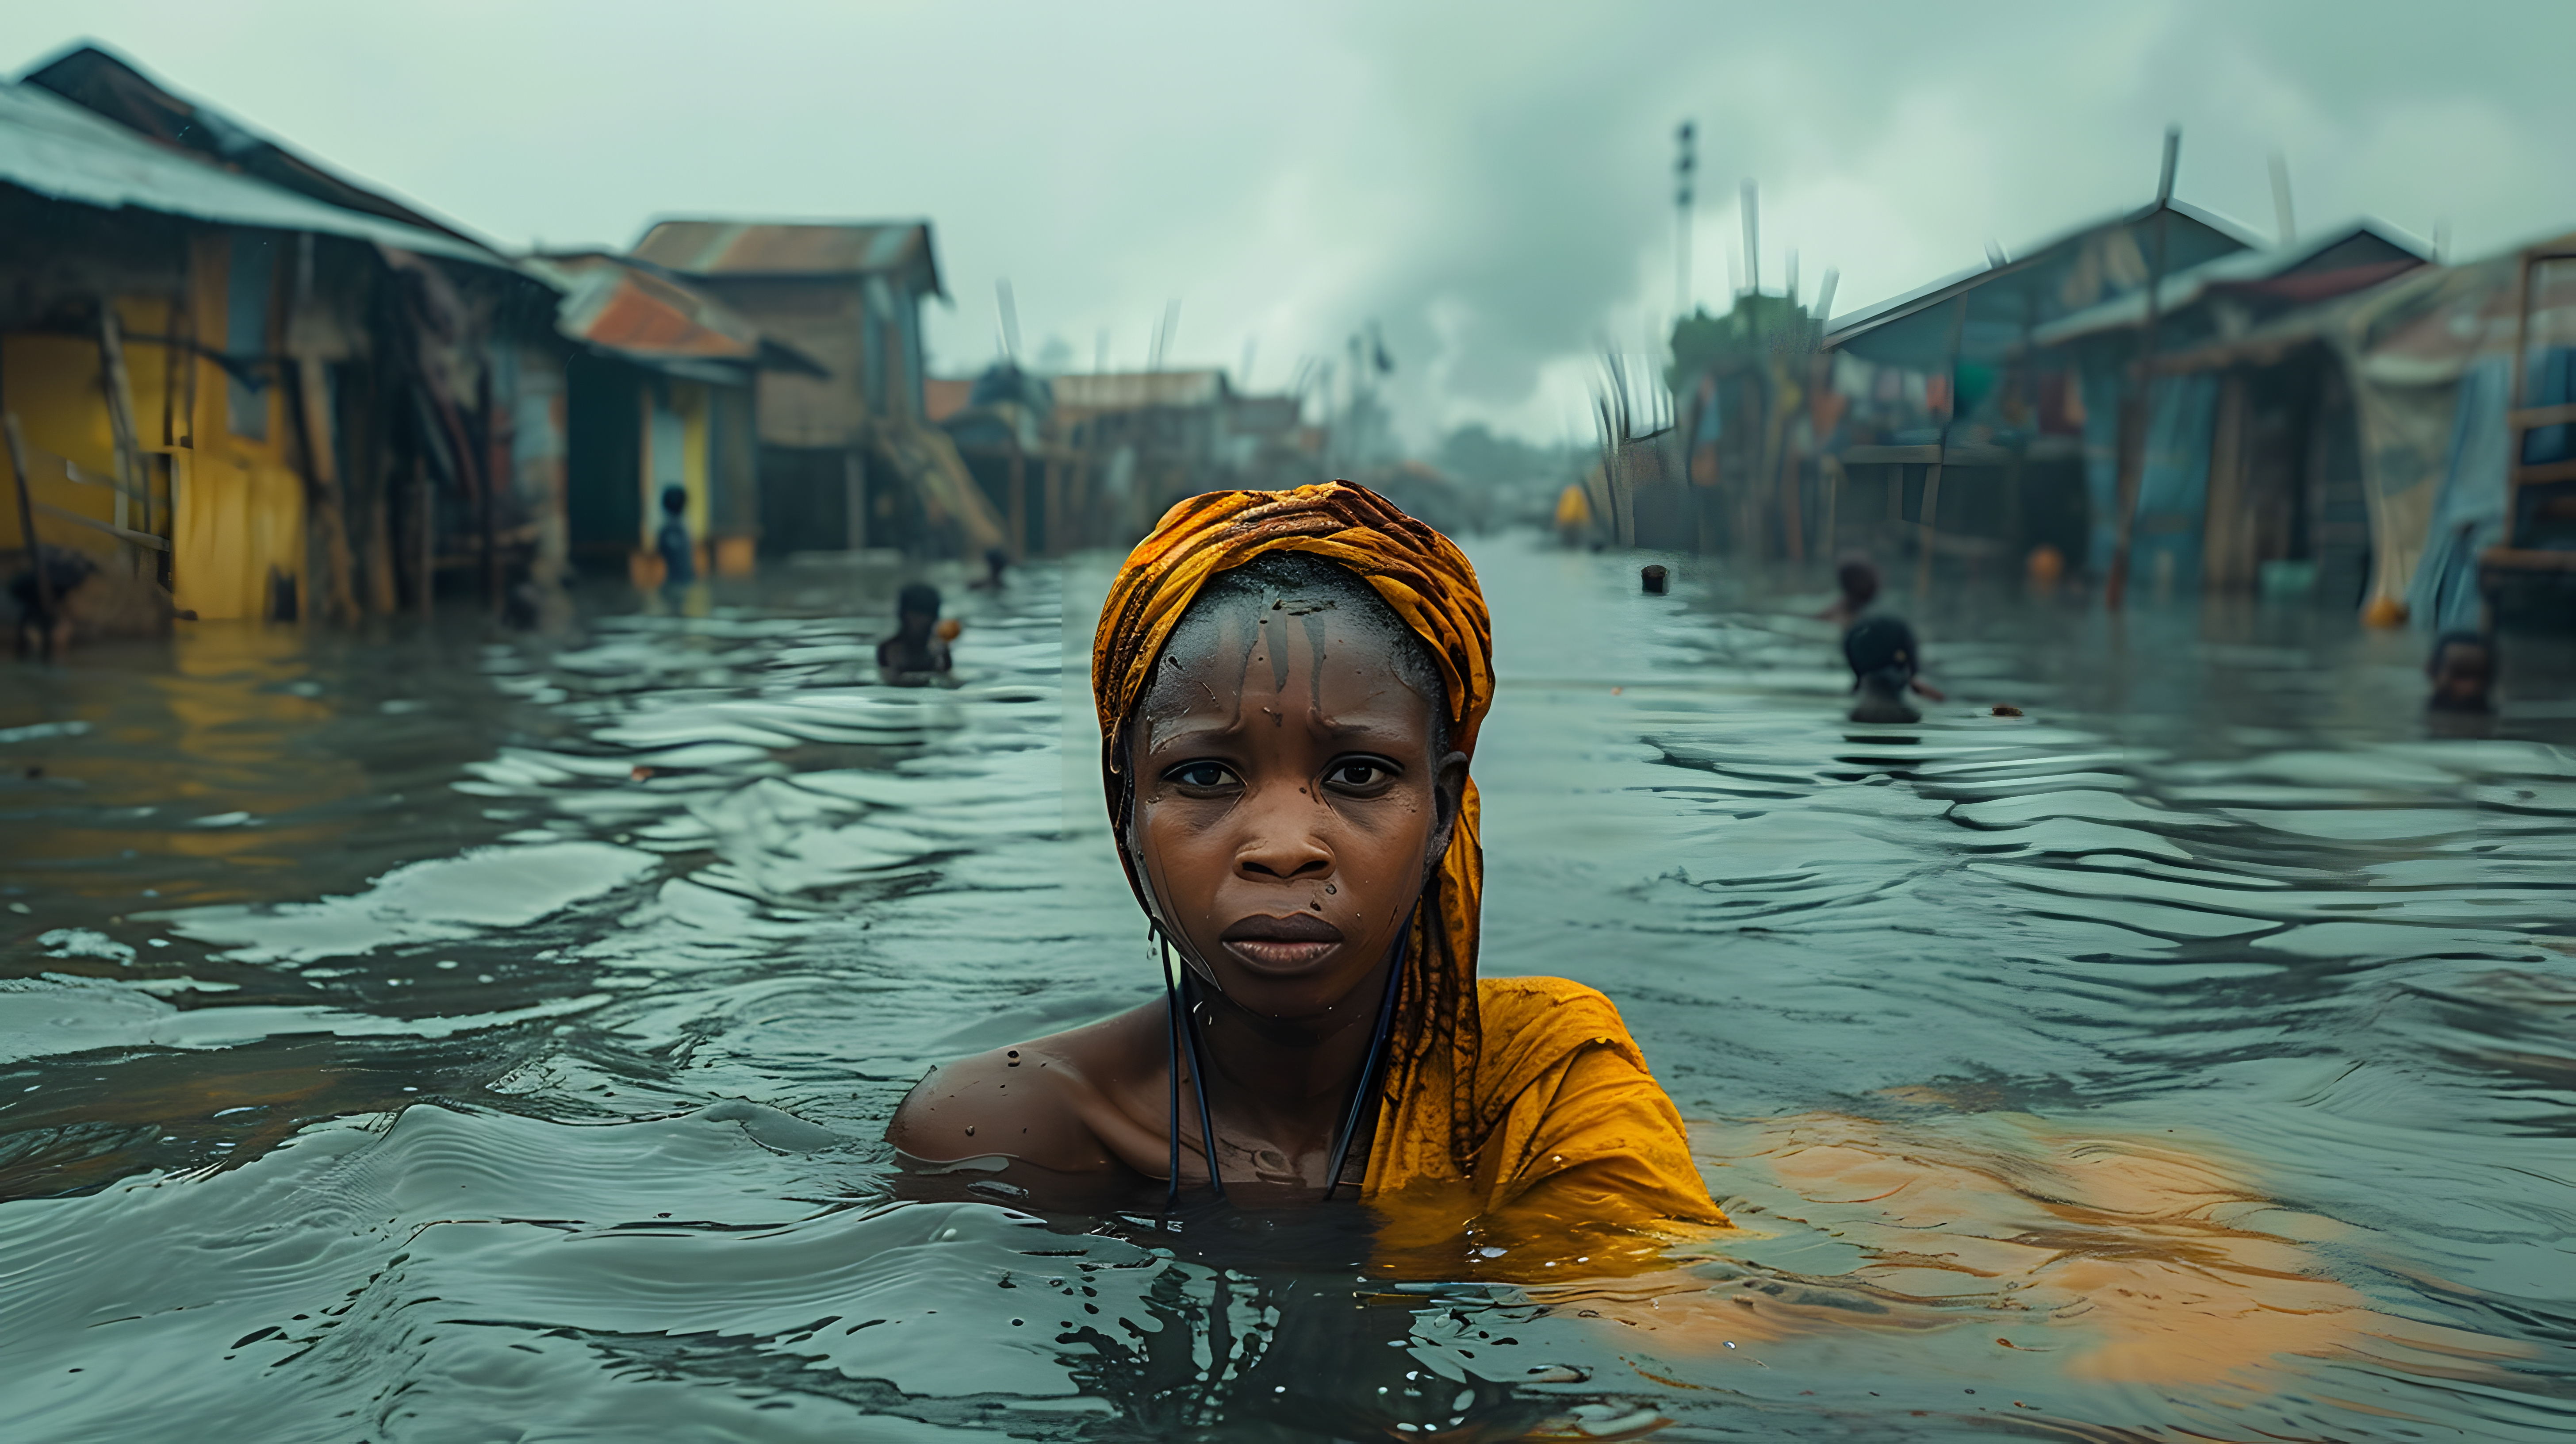 Les femmes ont beaucoup plus de risques de mourir dans les catastrophes climatiques que les hommes. © Korakrich, Adobe Stock